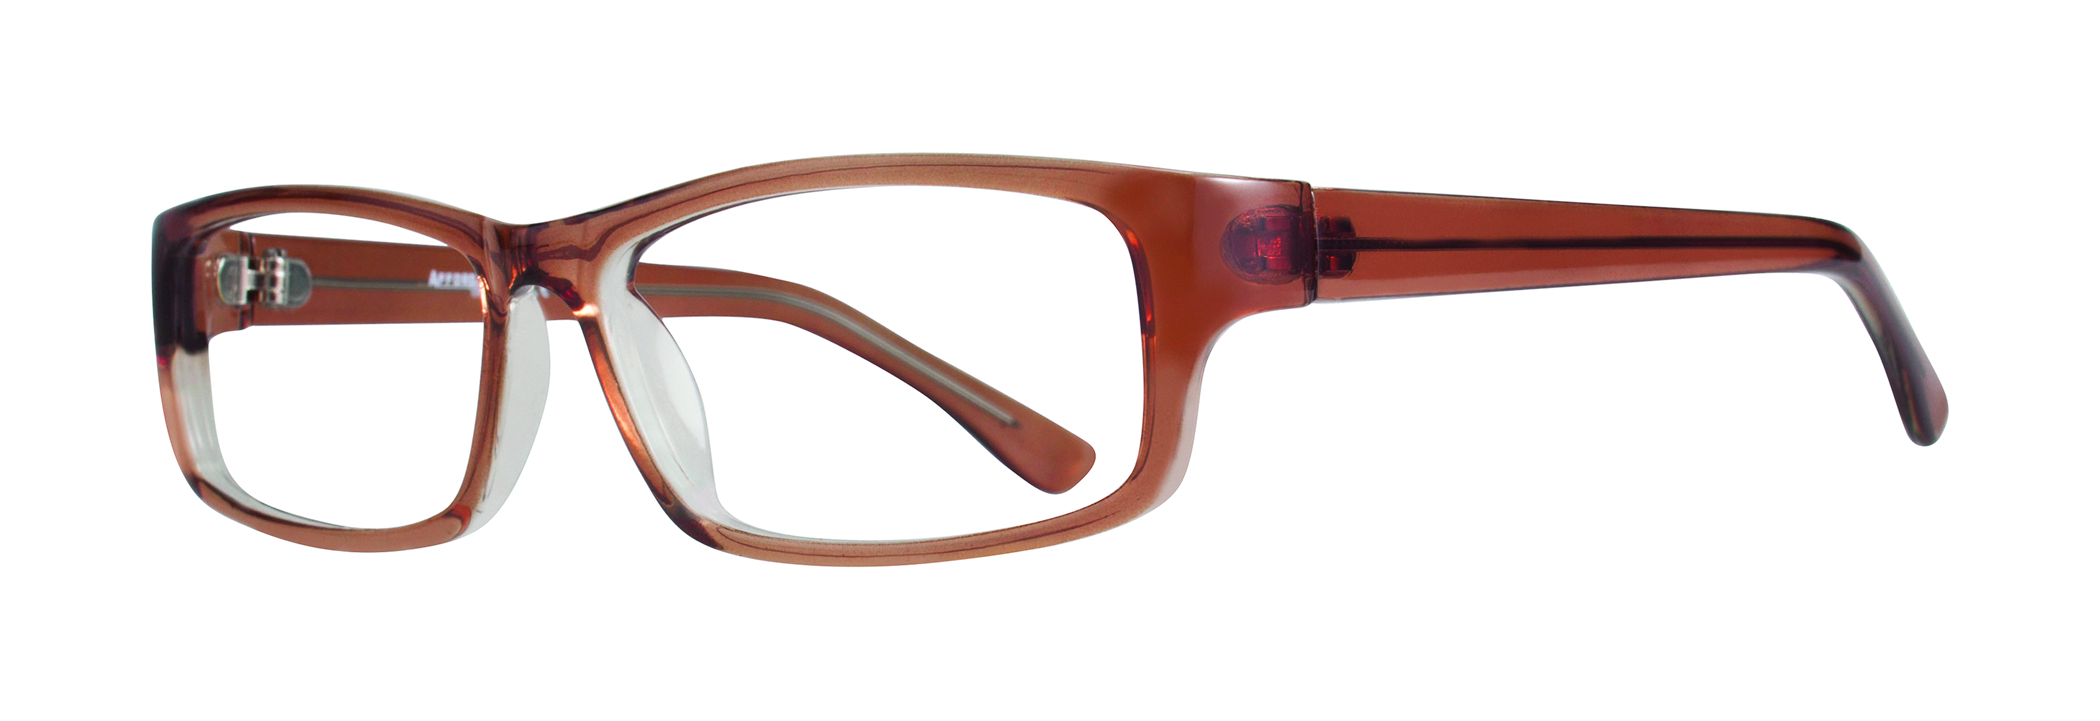 Picture of Affordable Designs Eyeglasses Glen